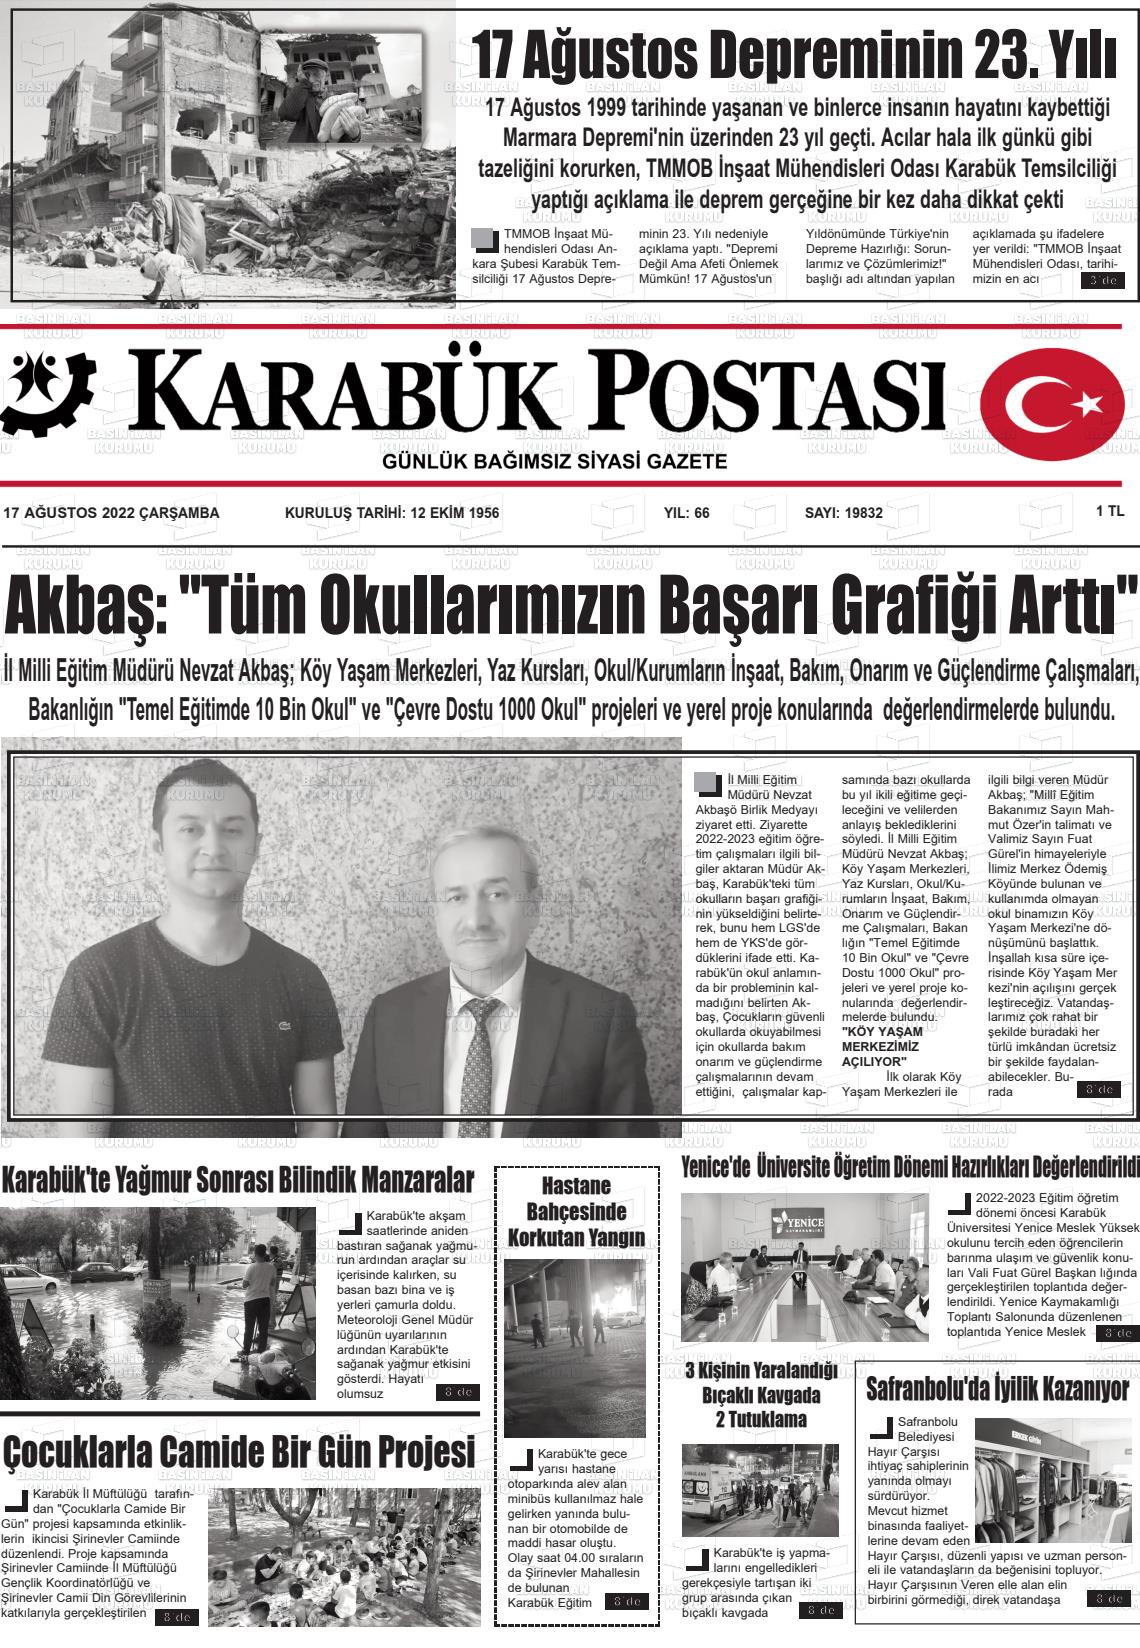 17 Ağustos 2022 Karabük Postası Gazete Manşeti